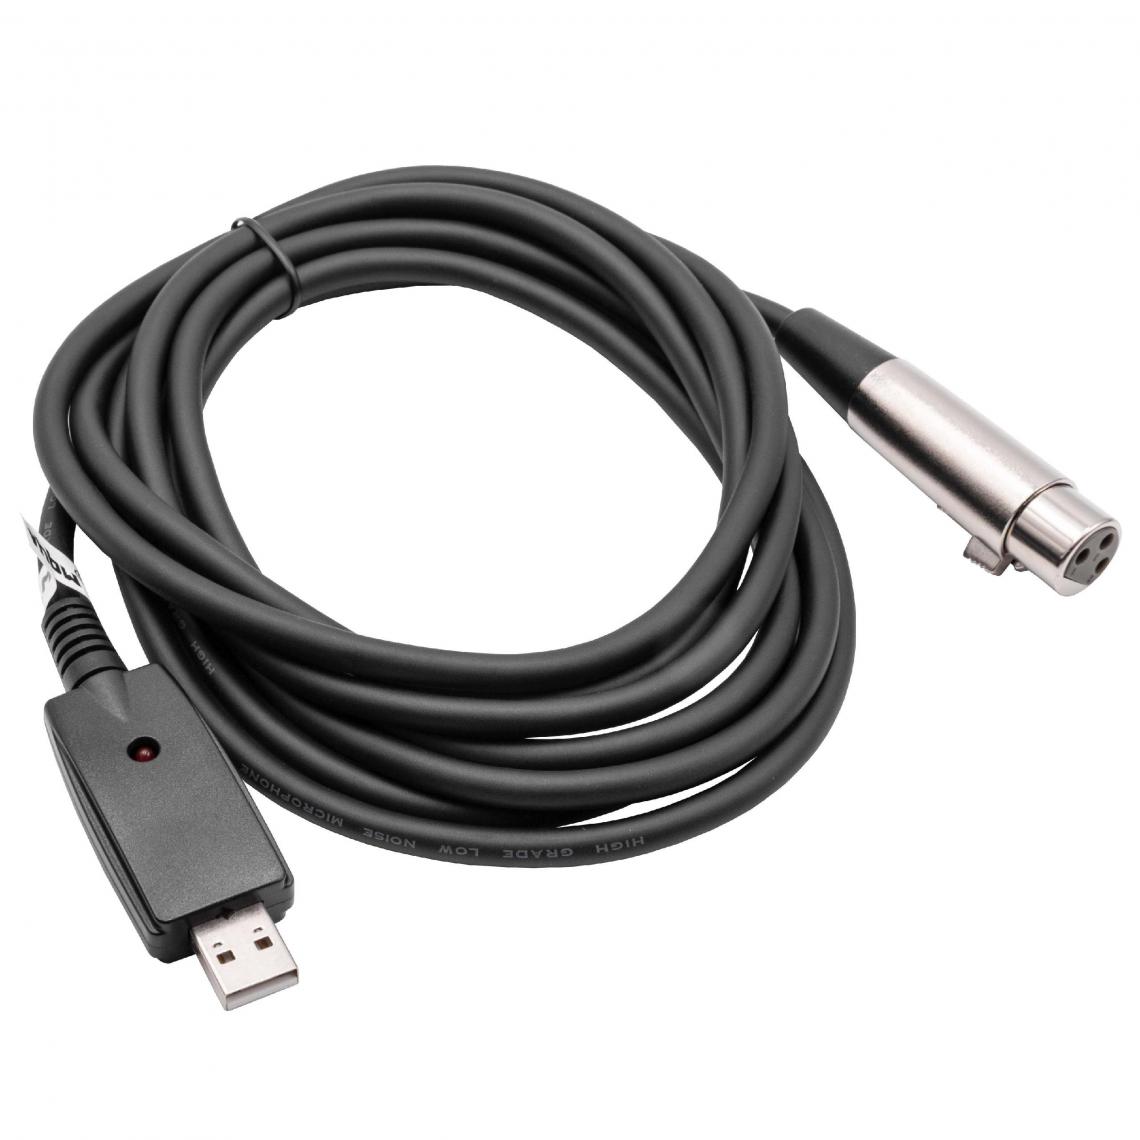 Vhbw - vhbw câble adaptateur USB 2.0 vers 6,35mm jack - 2.8m câble audio, câble microphone, câble USB - Accessoires claviers